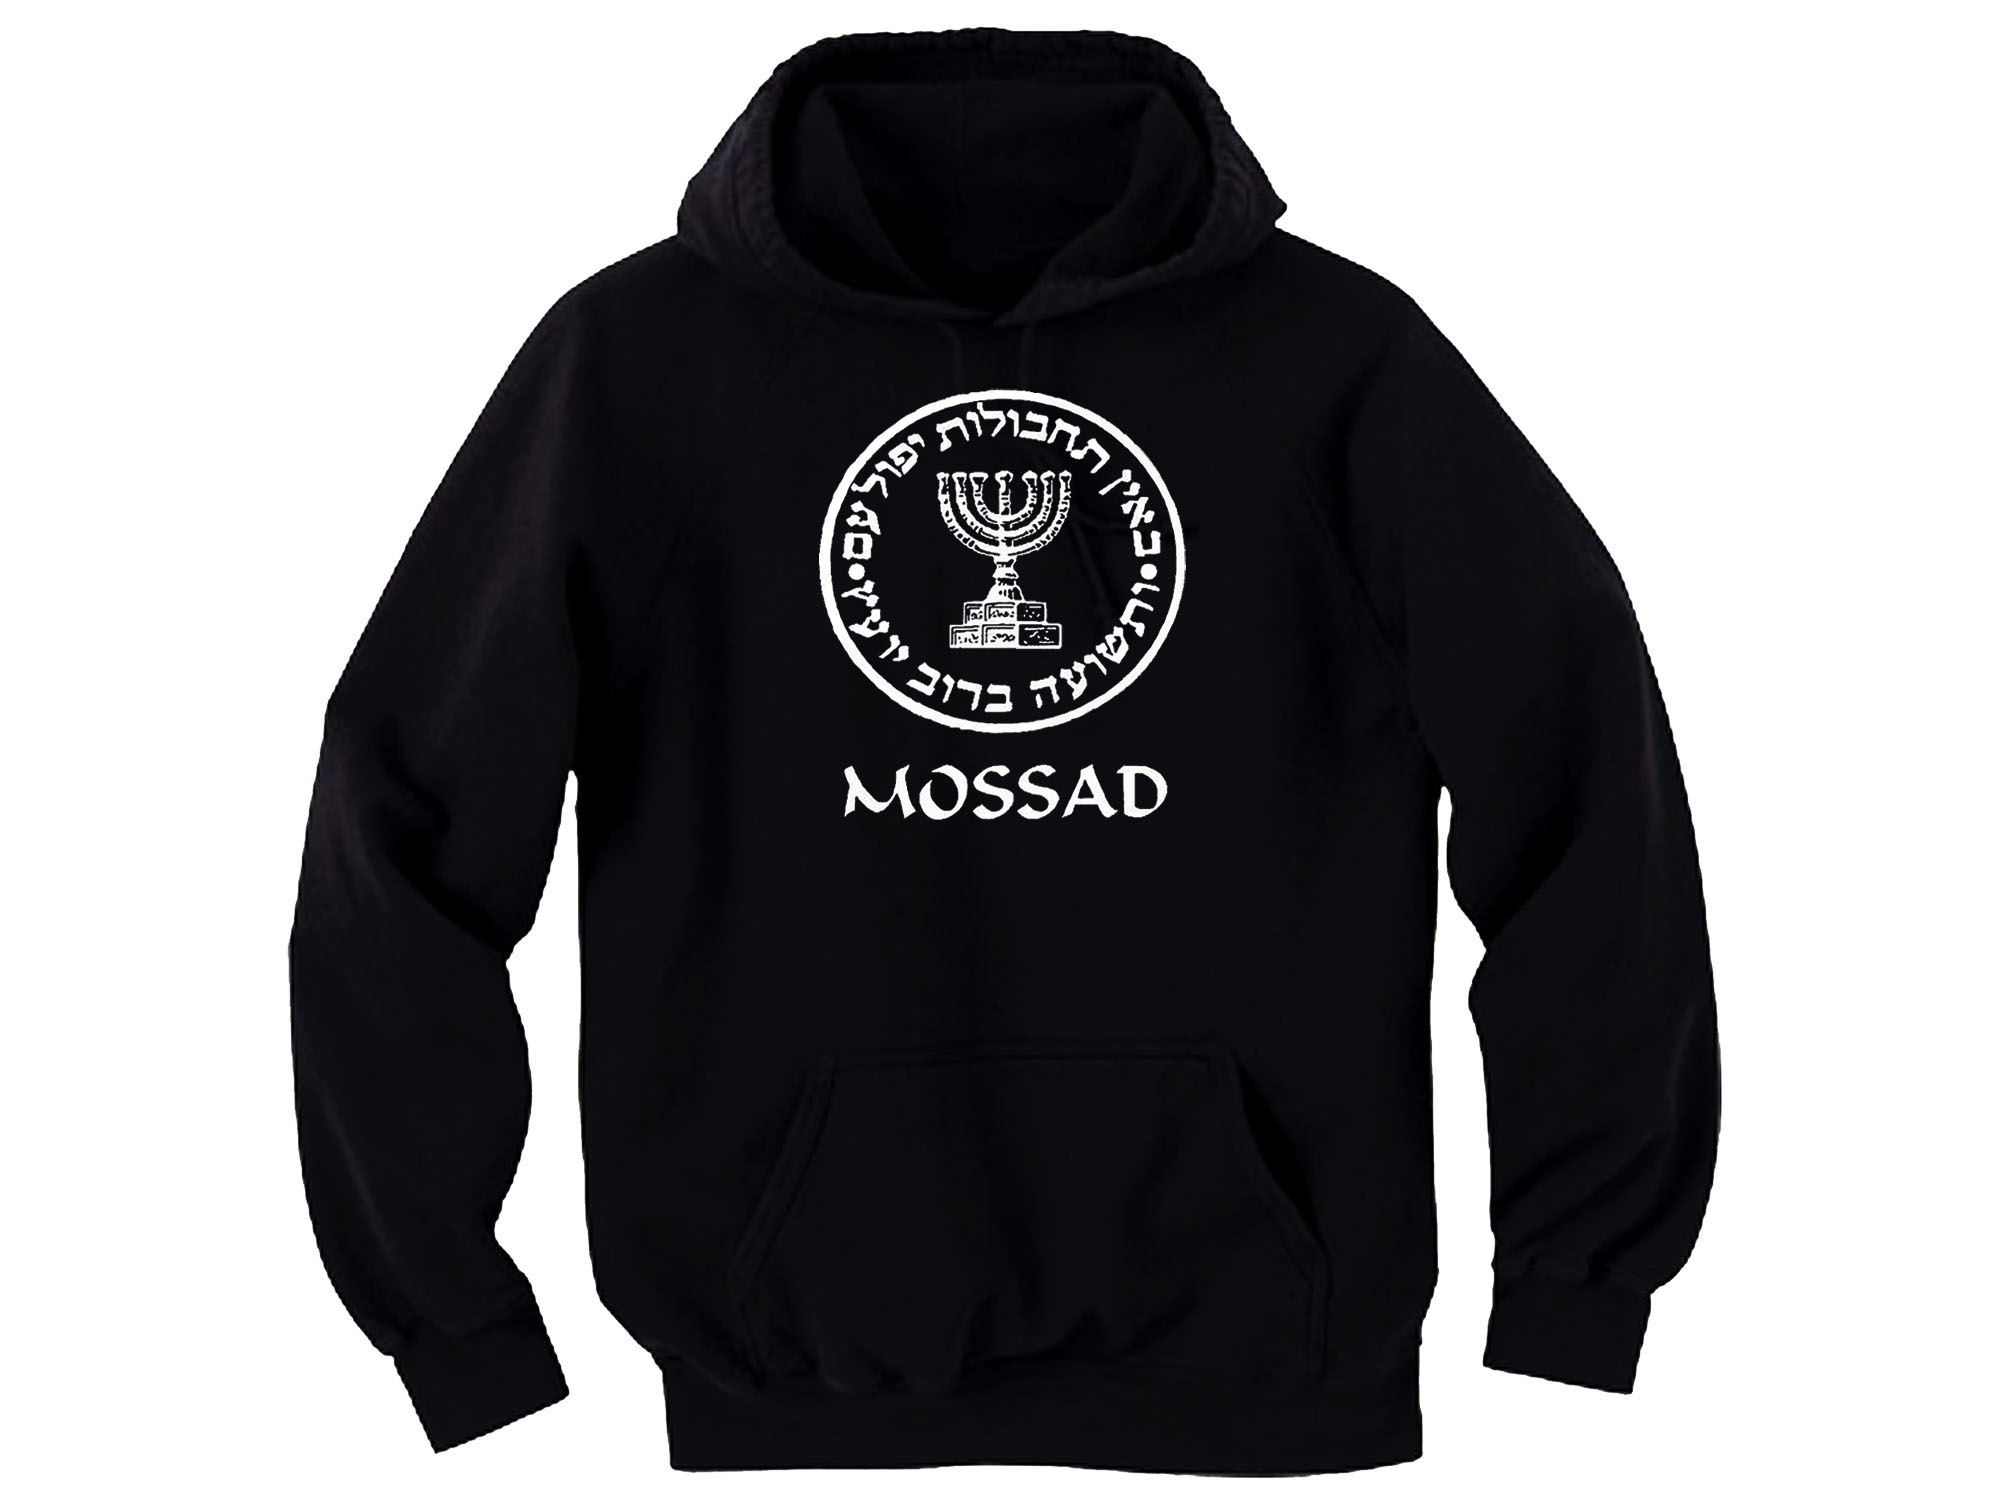 Mossad hoodie-Israel security agency sweatshirt 2